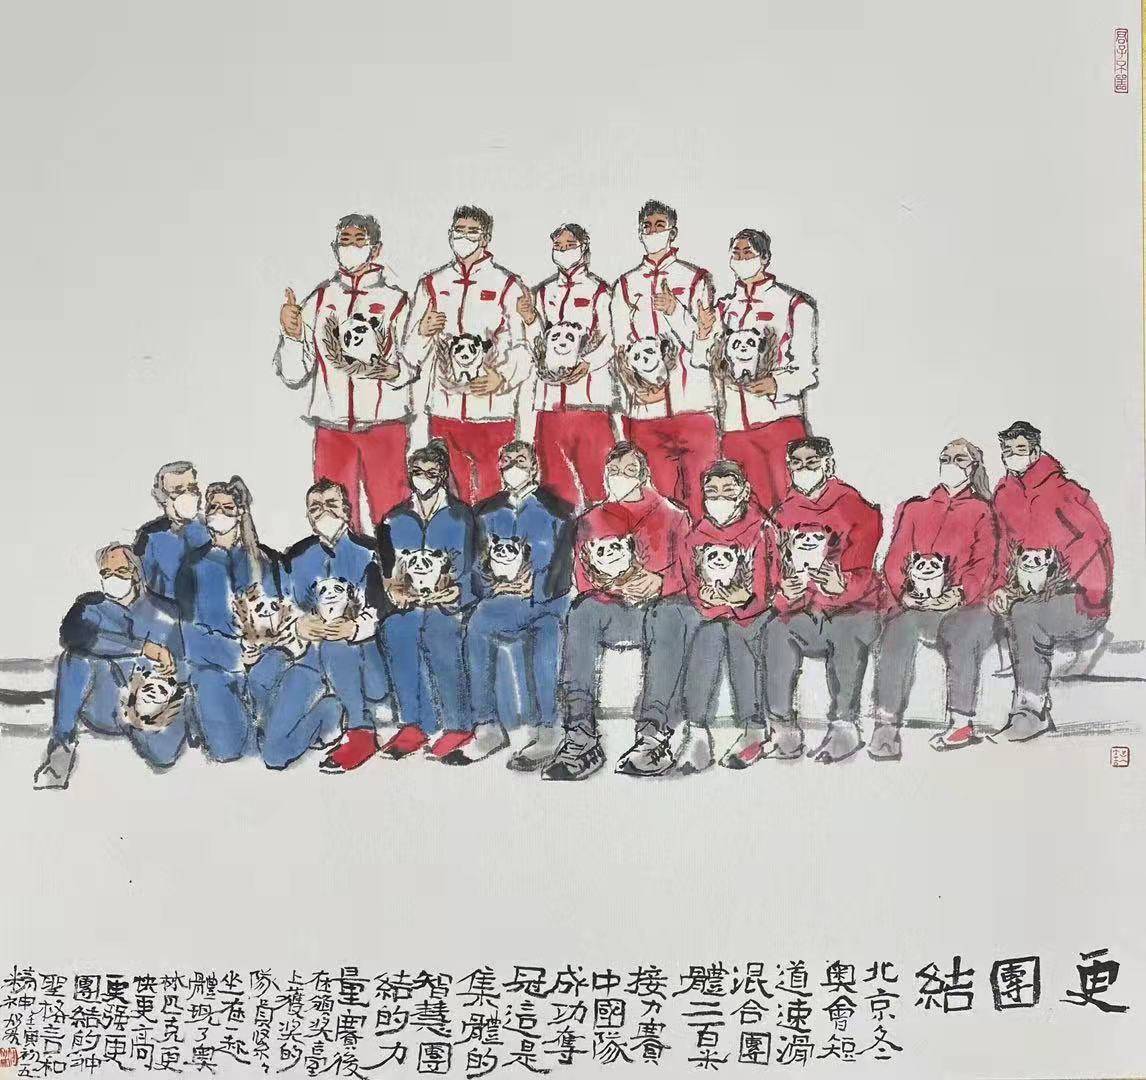 首金|中国队夺得第一金 何加林绘写《更团结》